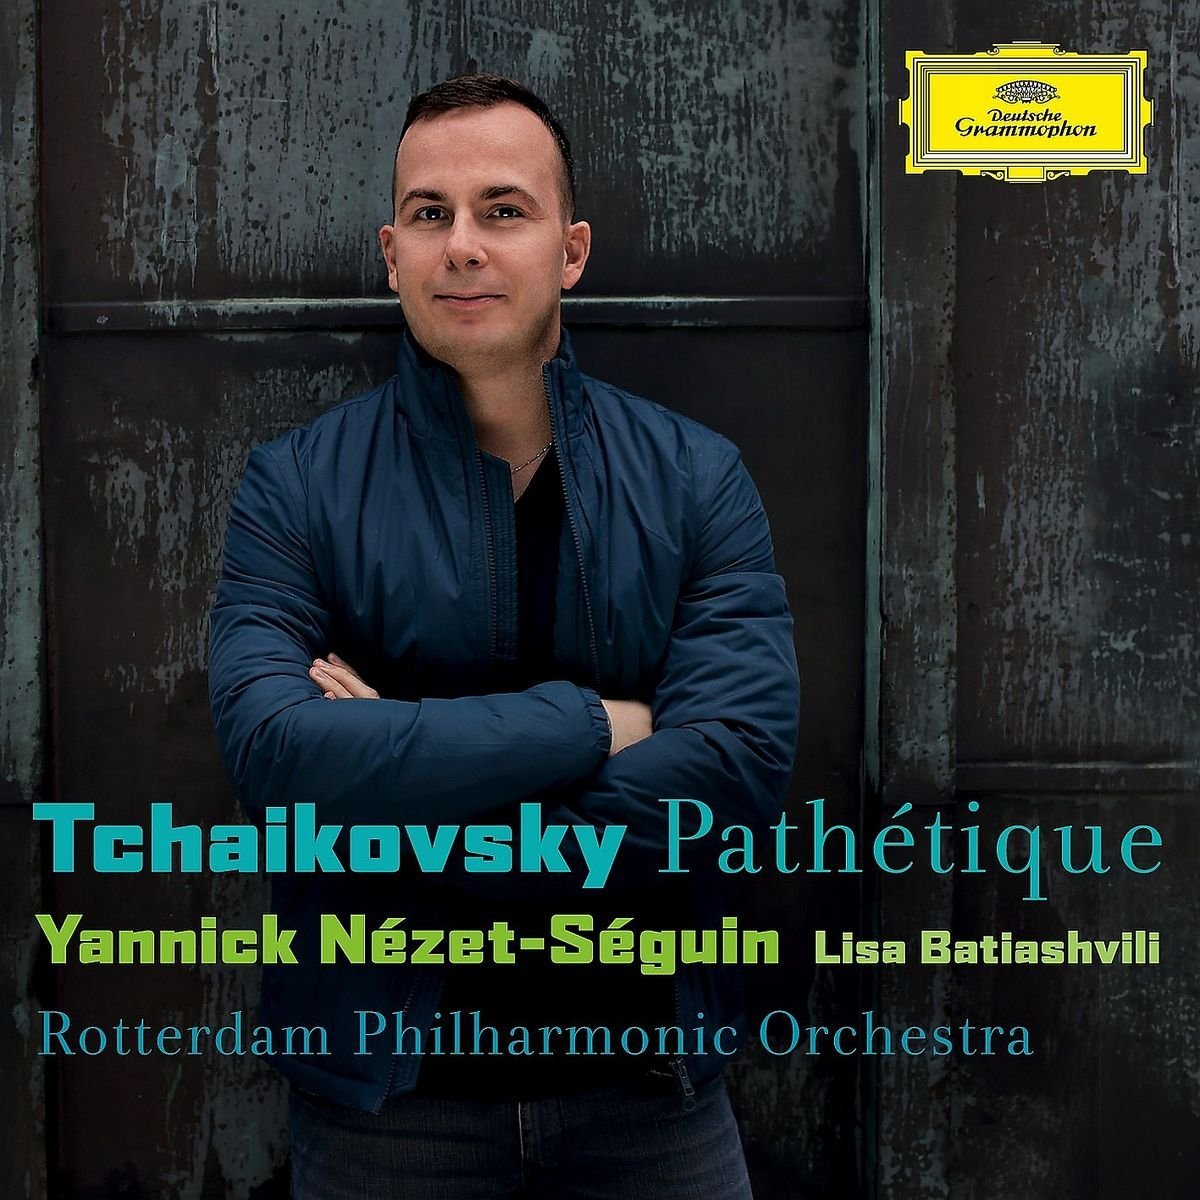 Yannick Nezet-Seguin, Lisa Batiashvili, Rotterdam Philharmonic Orchestra - Tchaikovsky: Pathetique (2014) [HDTracks FLAC 24bit/96kHz]